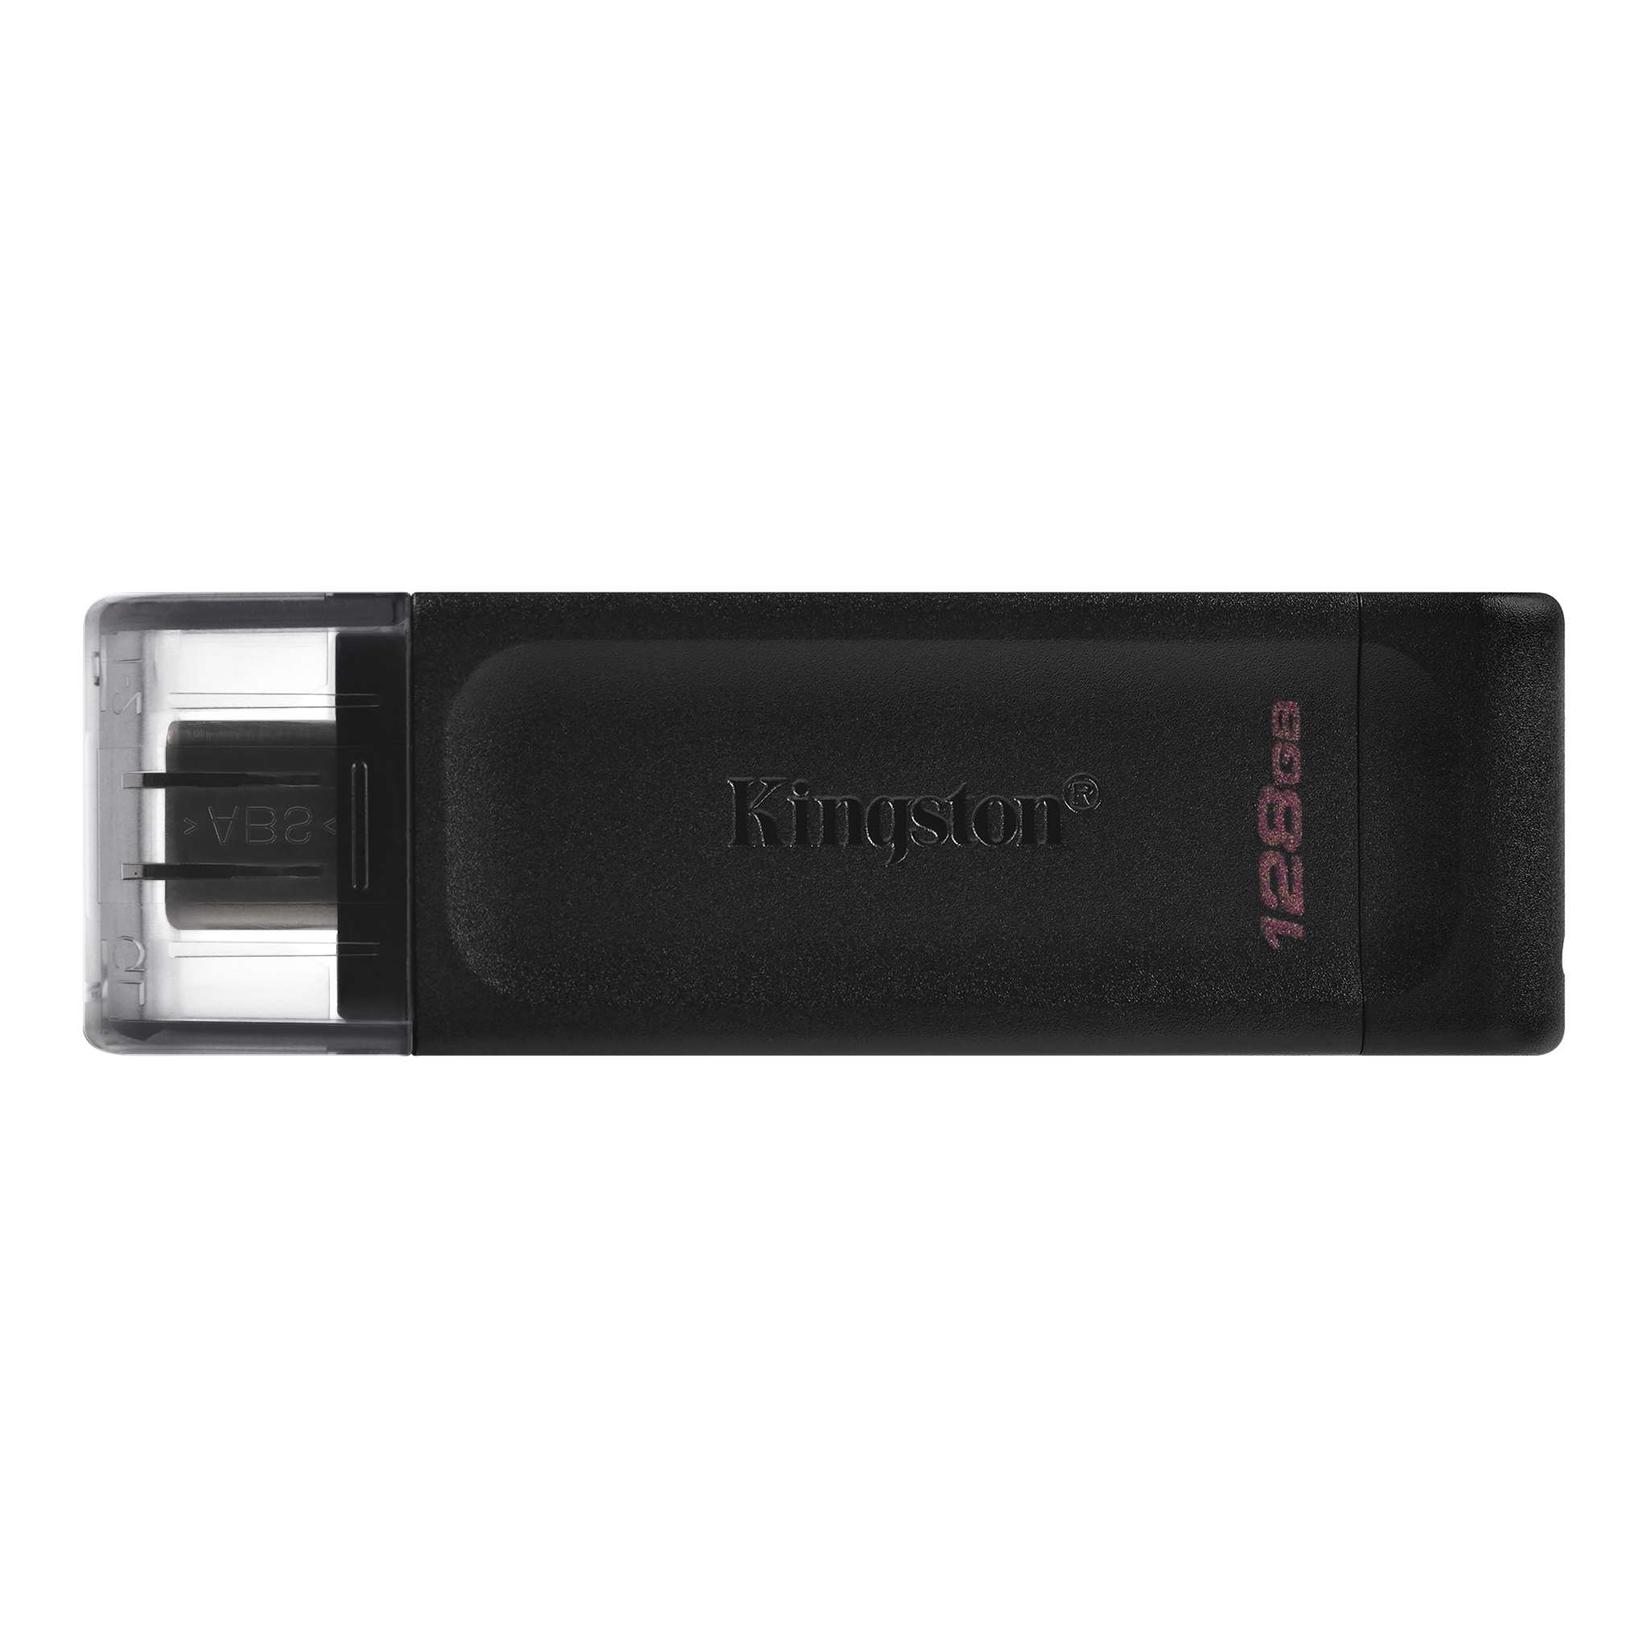 Kingston DT70/128GB USB Flash memorija, 128 GB, Crna